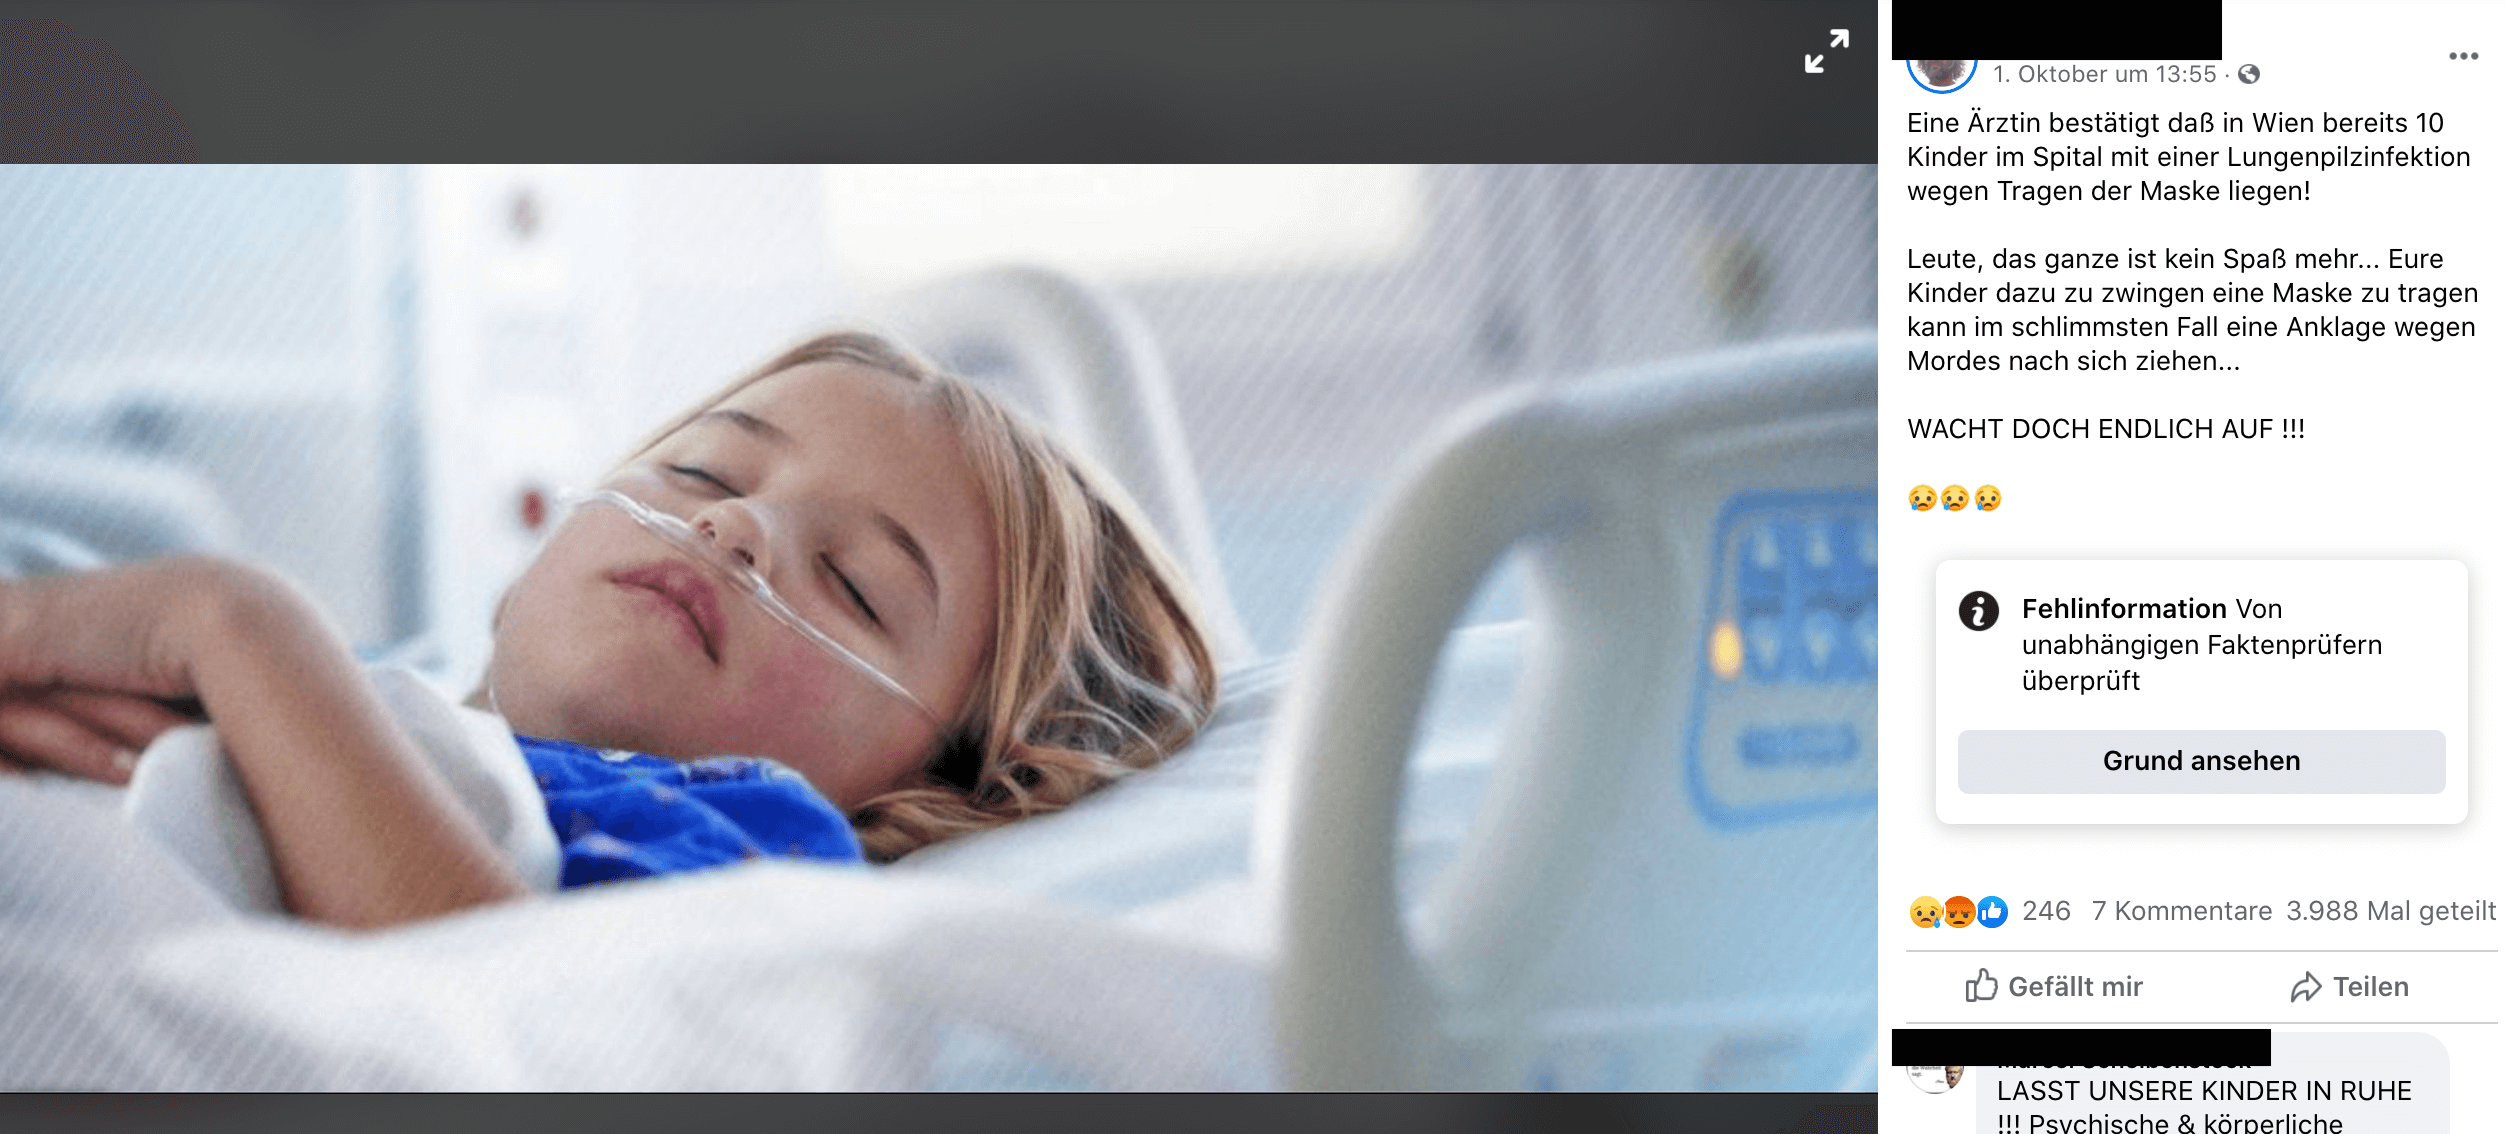 Die Behauptung, eine Ärztin habe bestätigt, dass zehn Kinder mit Lungenpilzinfektionen in Wiener Krankenhäusern lägen, wird aktuell auf Facebook verbreitet. (Quelle: Facebook, Screenshot und Schwärzungen: CORRECTIV)